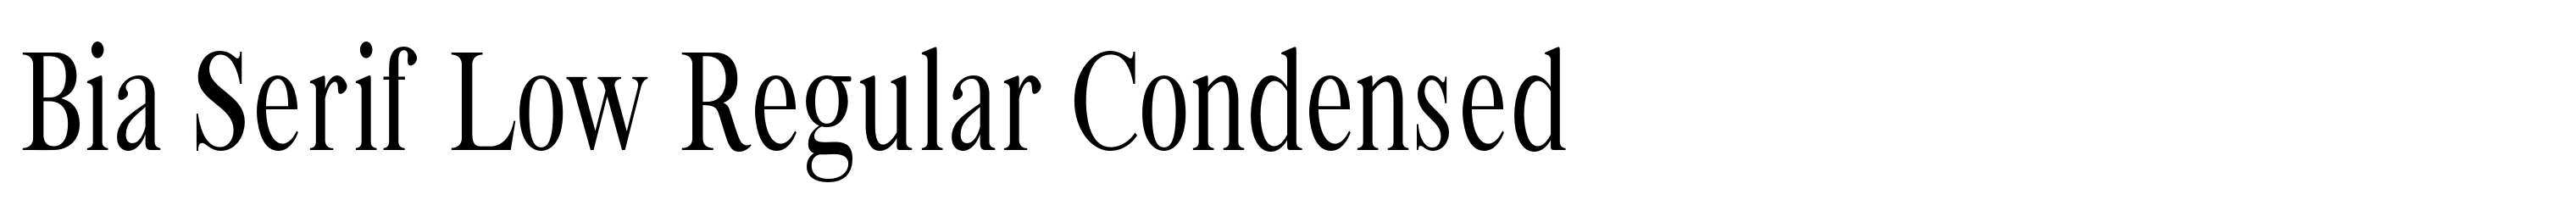 Bia Serif Low Regular Condensed